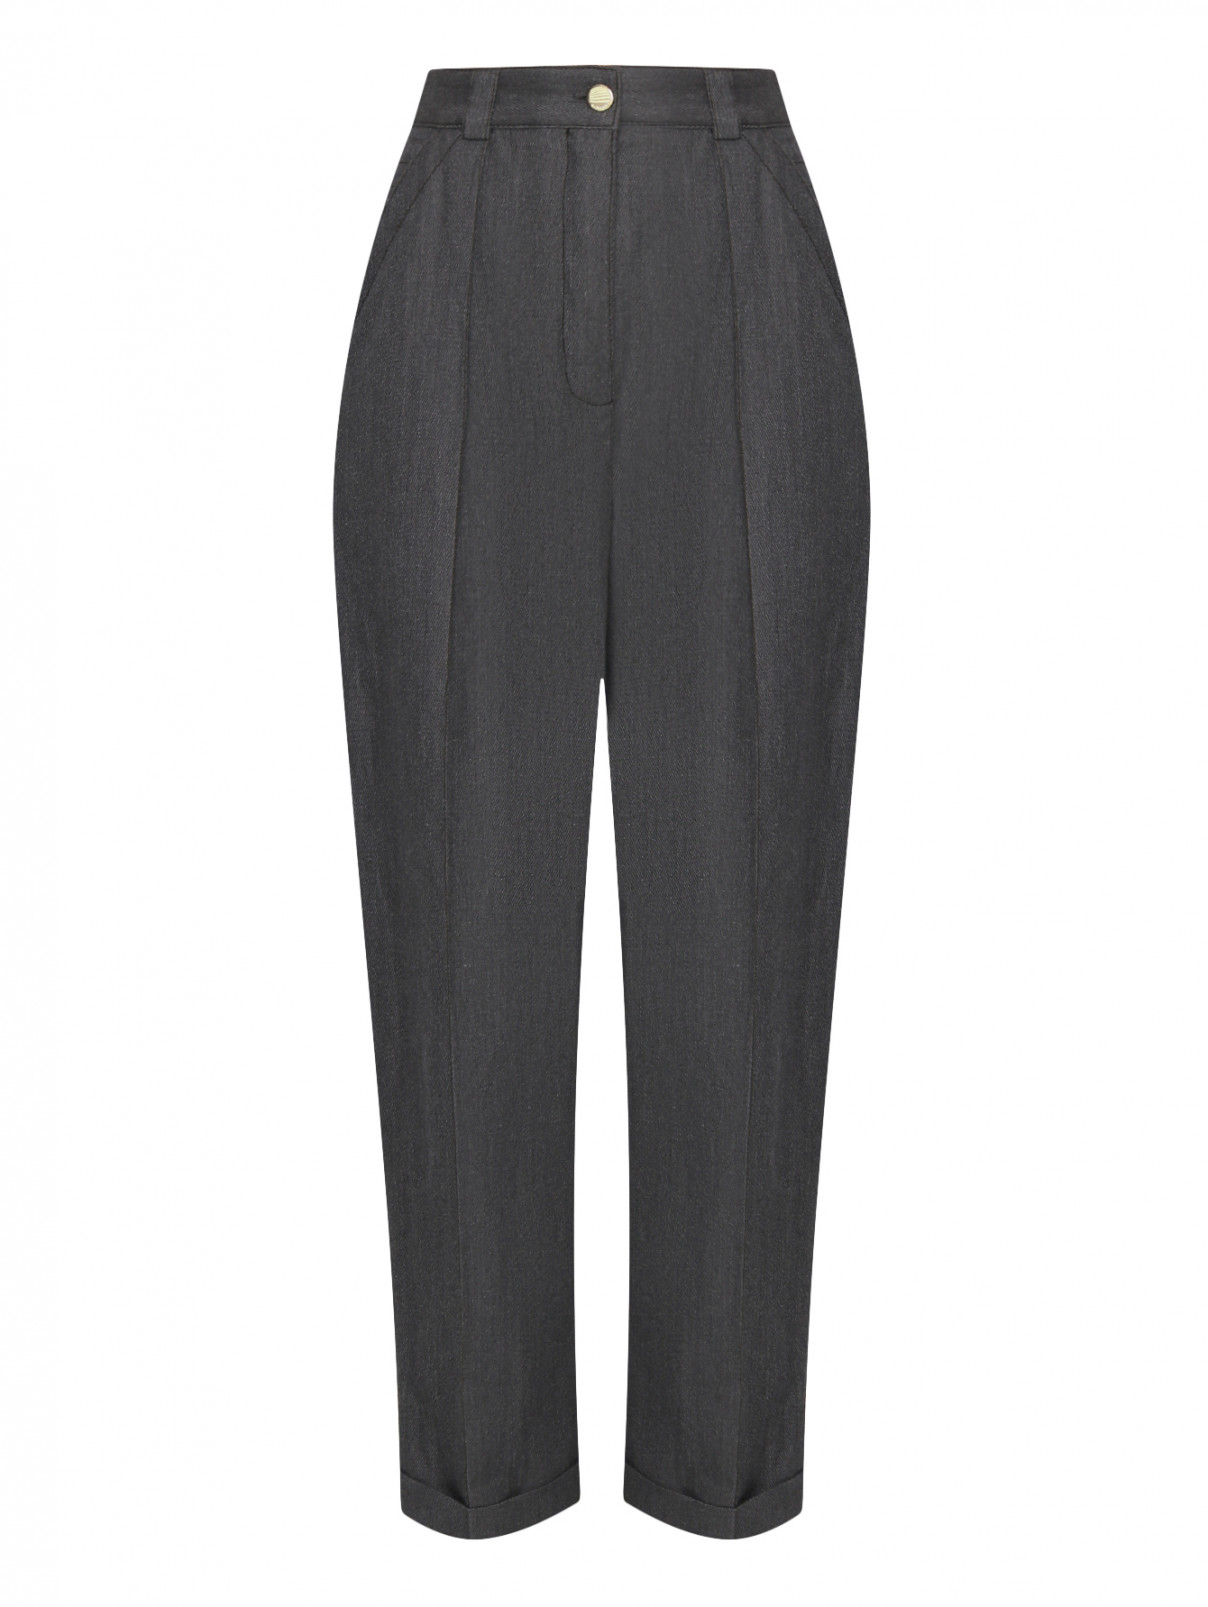 Укороченные брюки на высокой талии из шерсти и льна Nina Ricci  –  Общий вид  – Цвет:  Серый